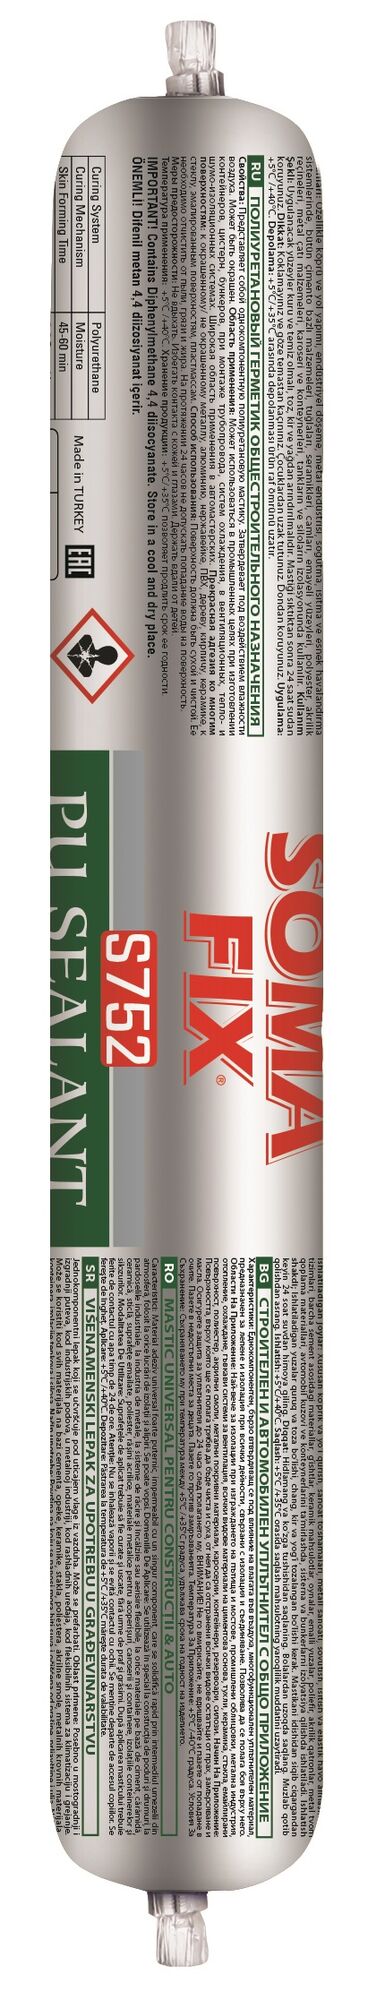 Герметик SOMA FIX полиуретановый, общестроительный (черный), 600 мл